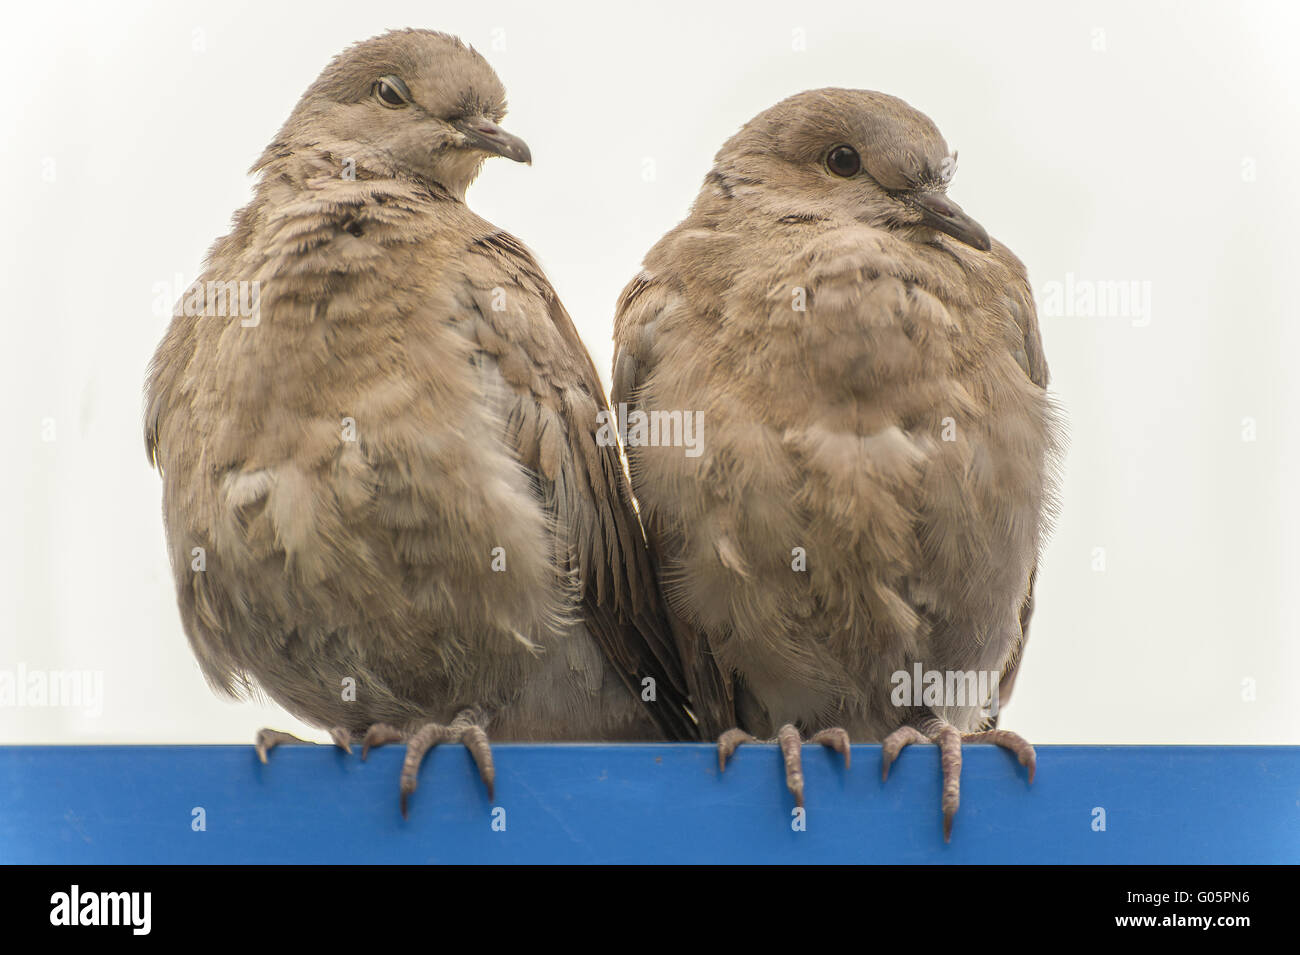 2 palomas sentados uno al lado del otro en una barra azul. Foto de stock